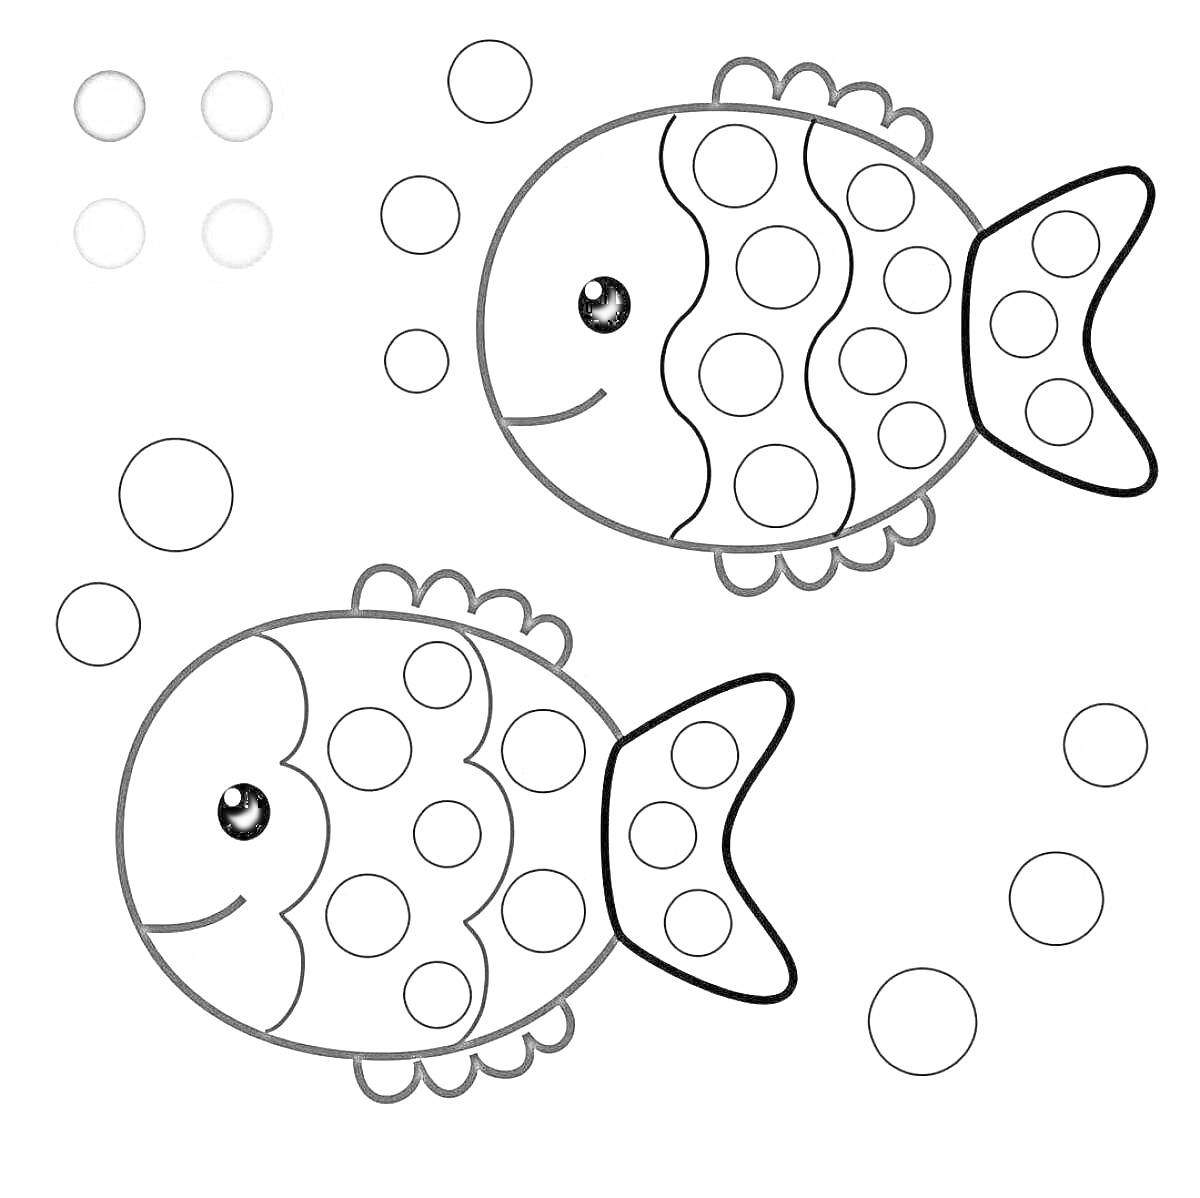 Две рыбки с кругами и пузырьками